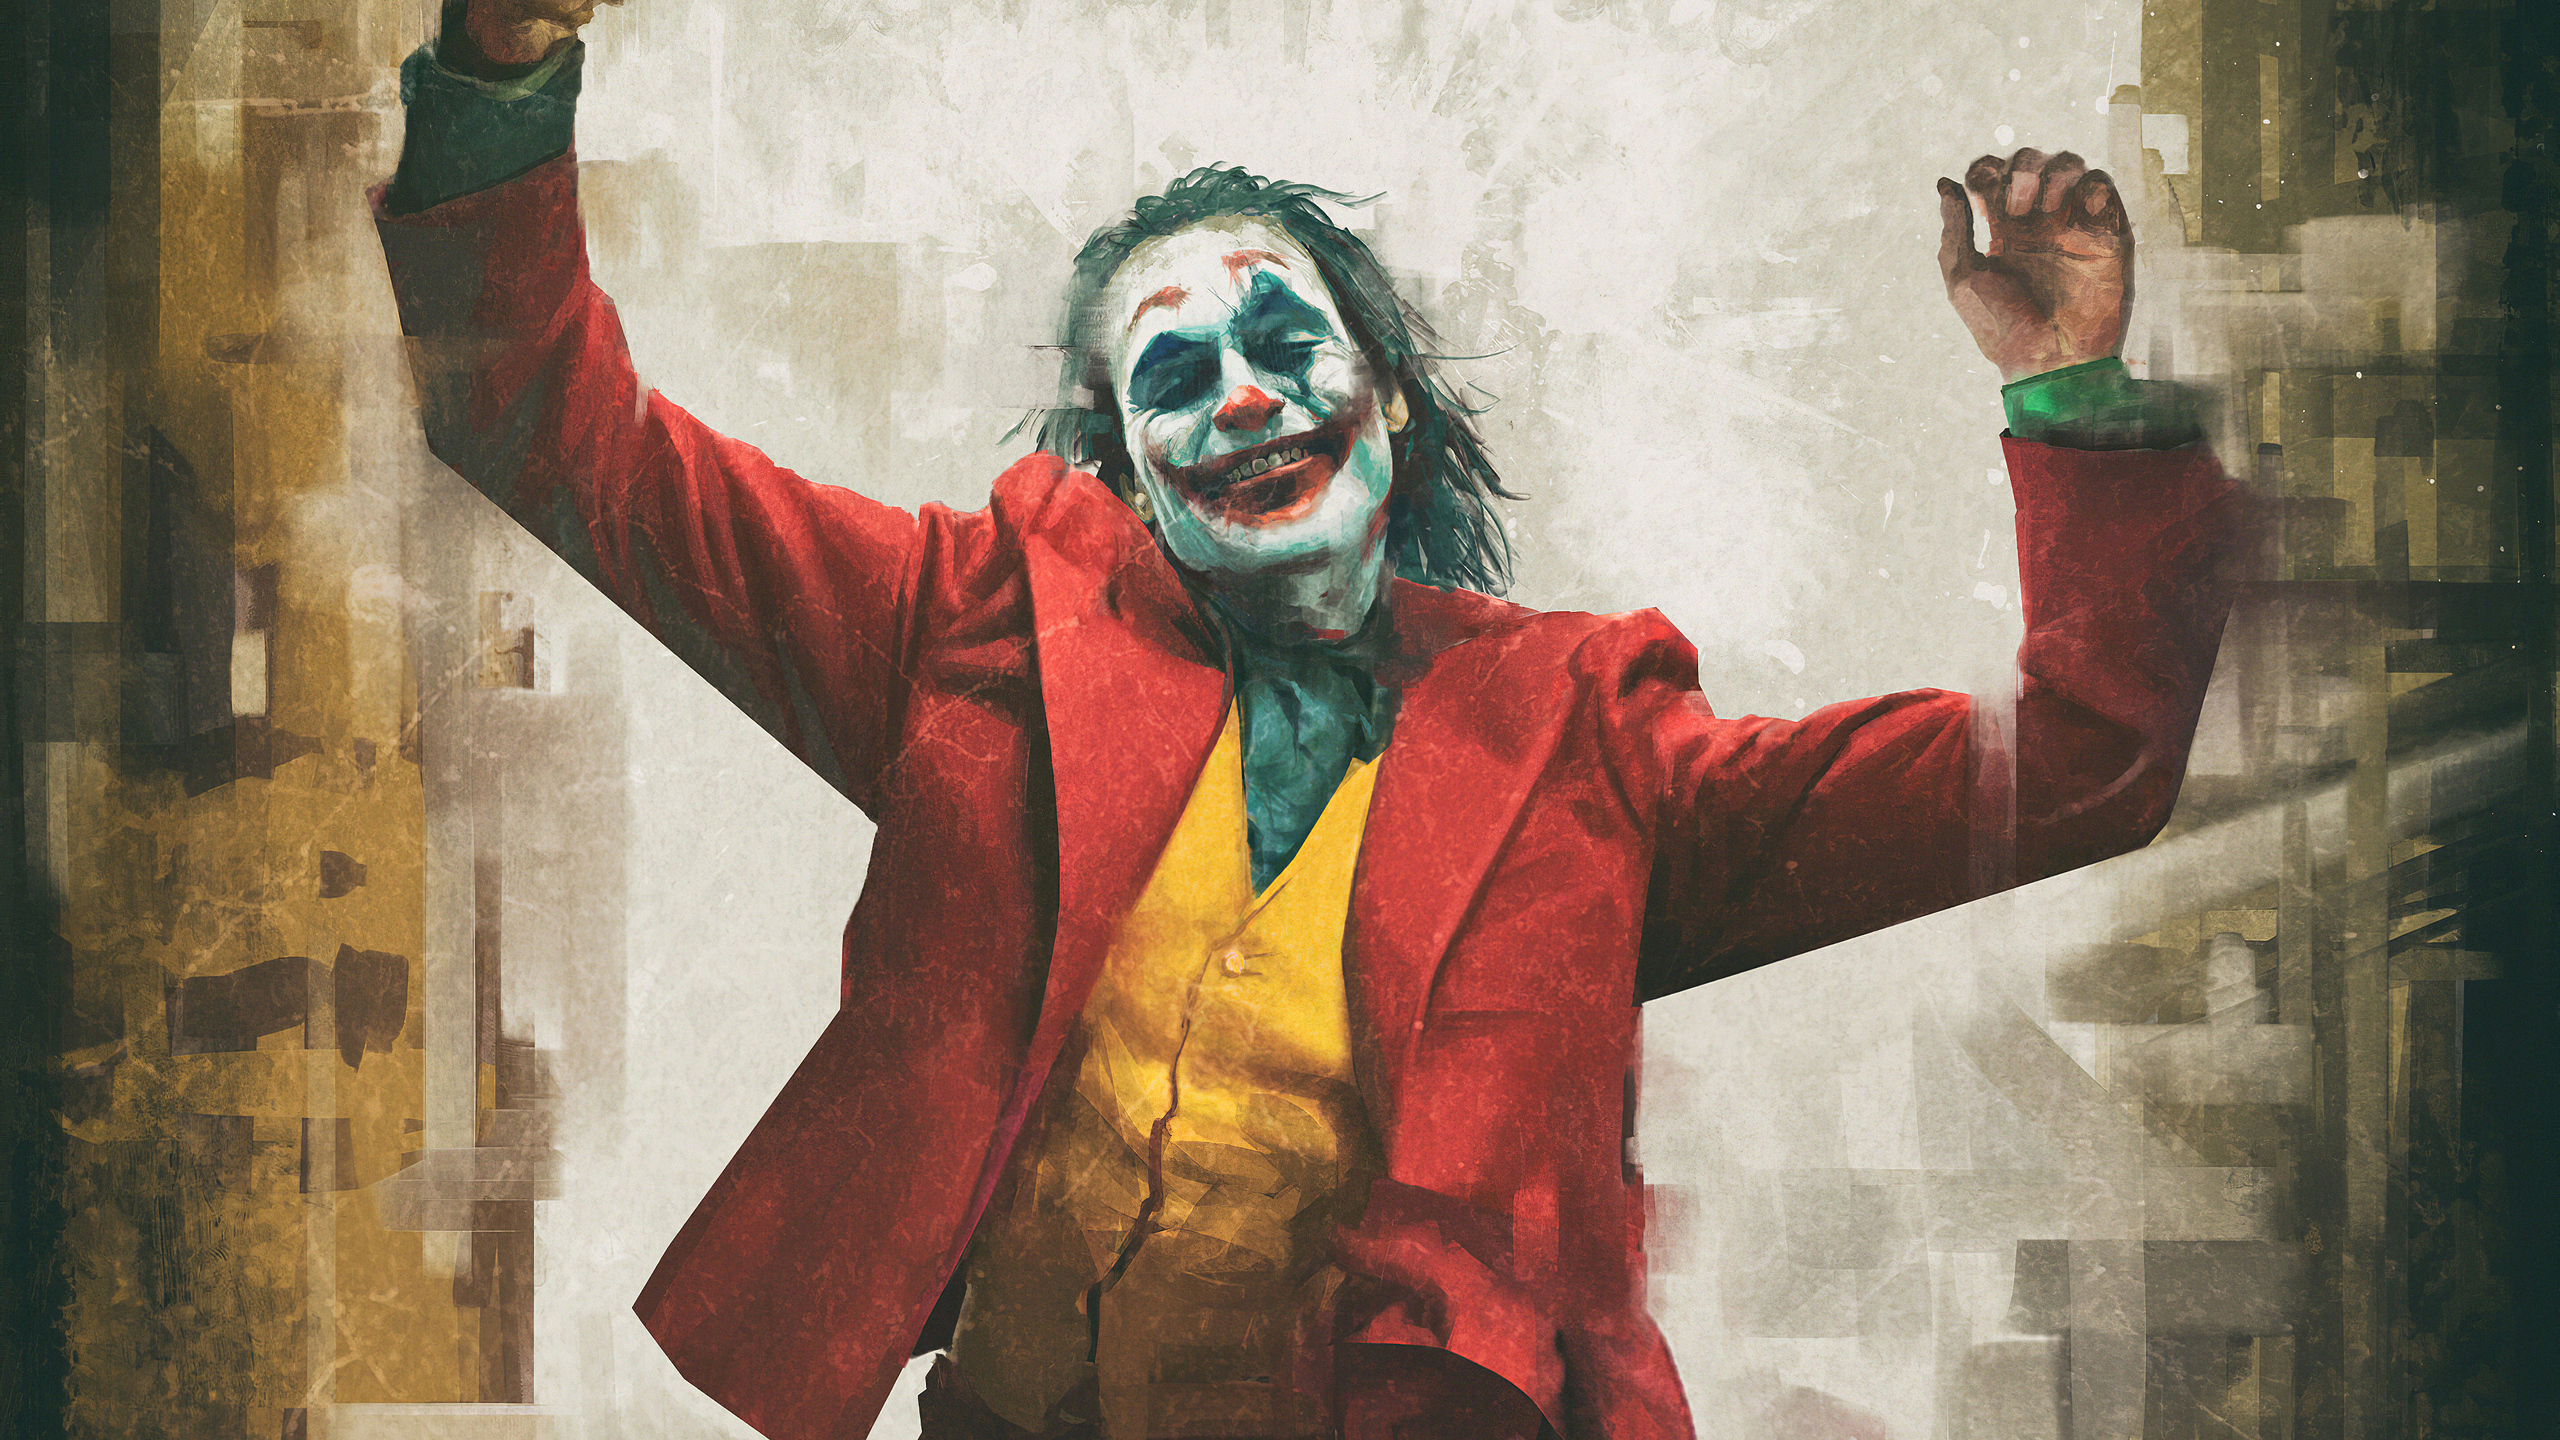 Joker Wallpaper 4K - Joker 4K wallpapers for your desktop or mobile